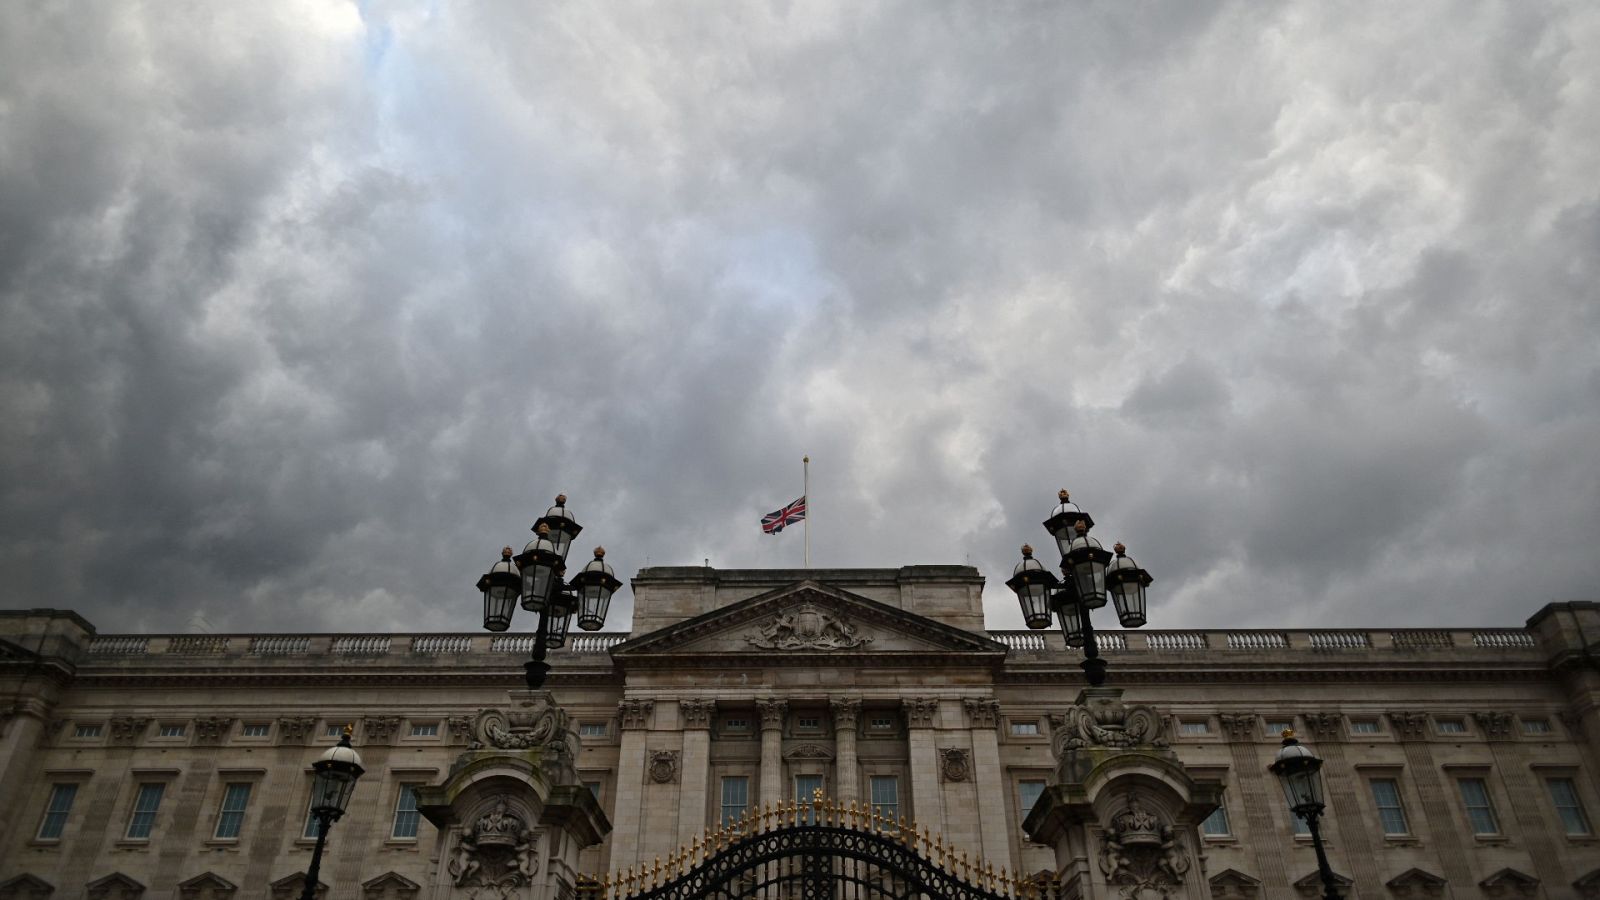 La bandera del Reino Unido ondea a media asta en el Palacio de Buckingham, Londres, en señal de duelo por el fallecimiento del príncipe Felipe, duque de Edimburgo